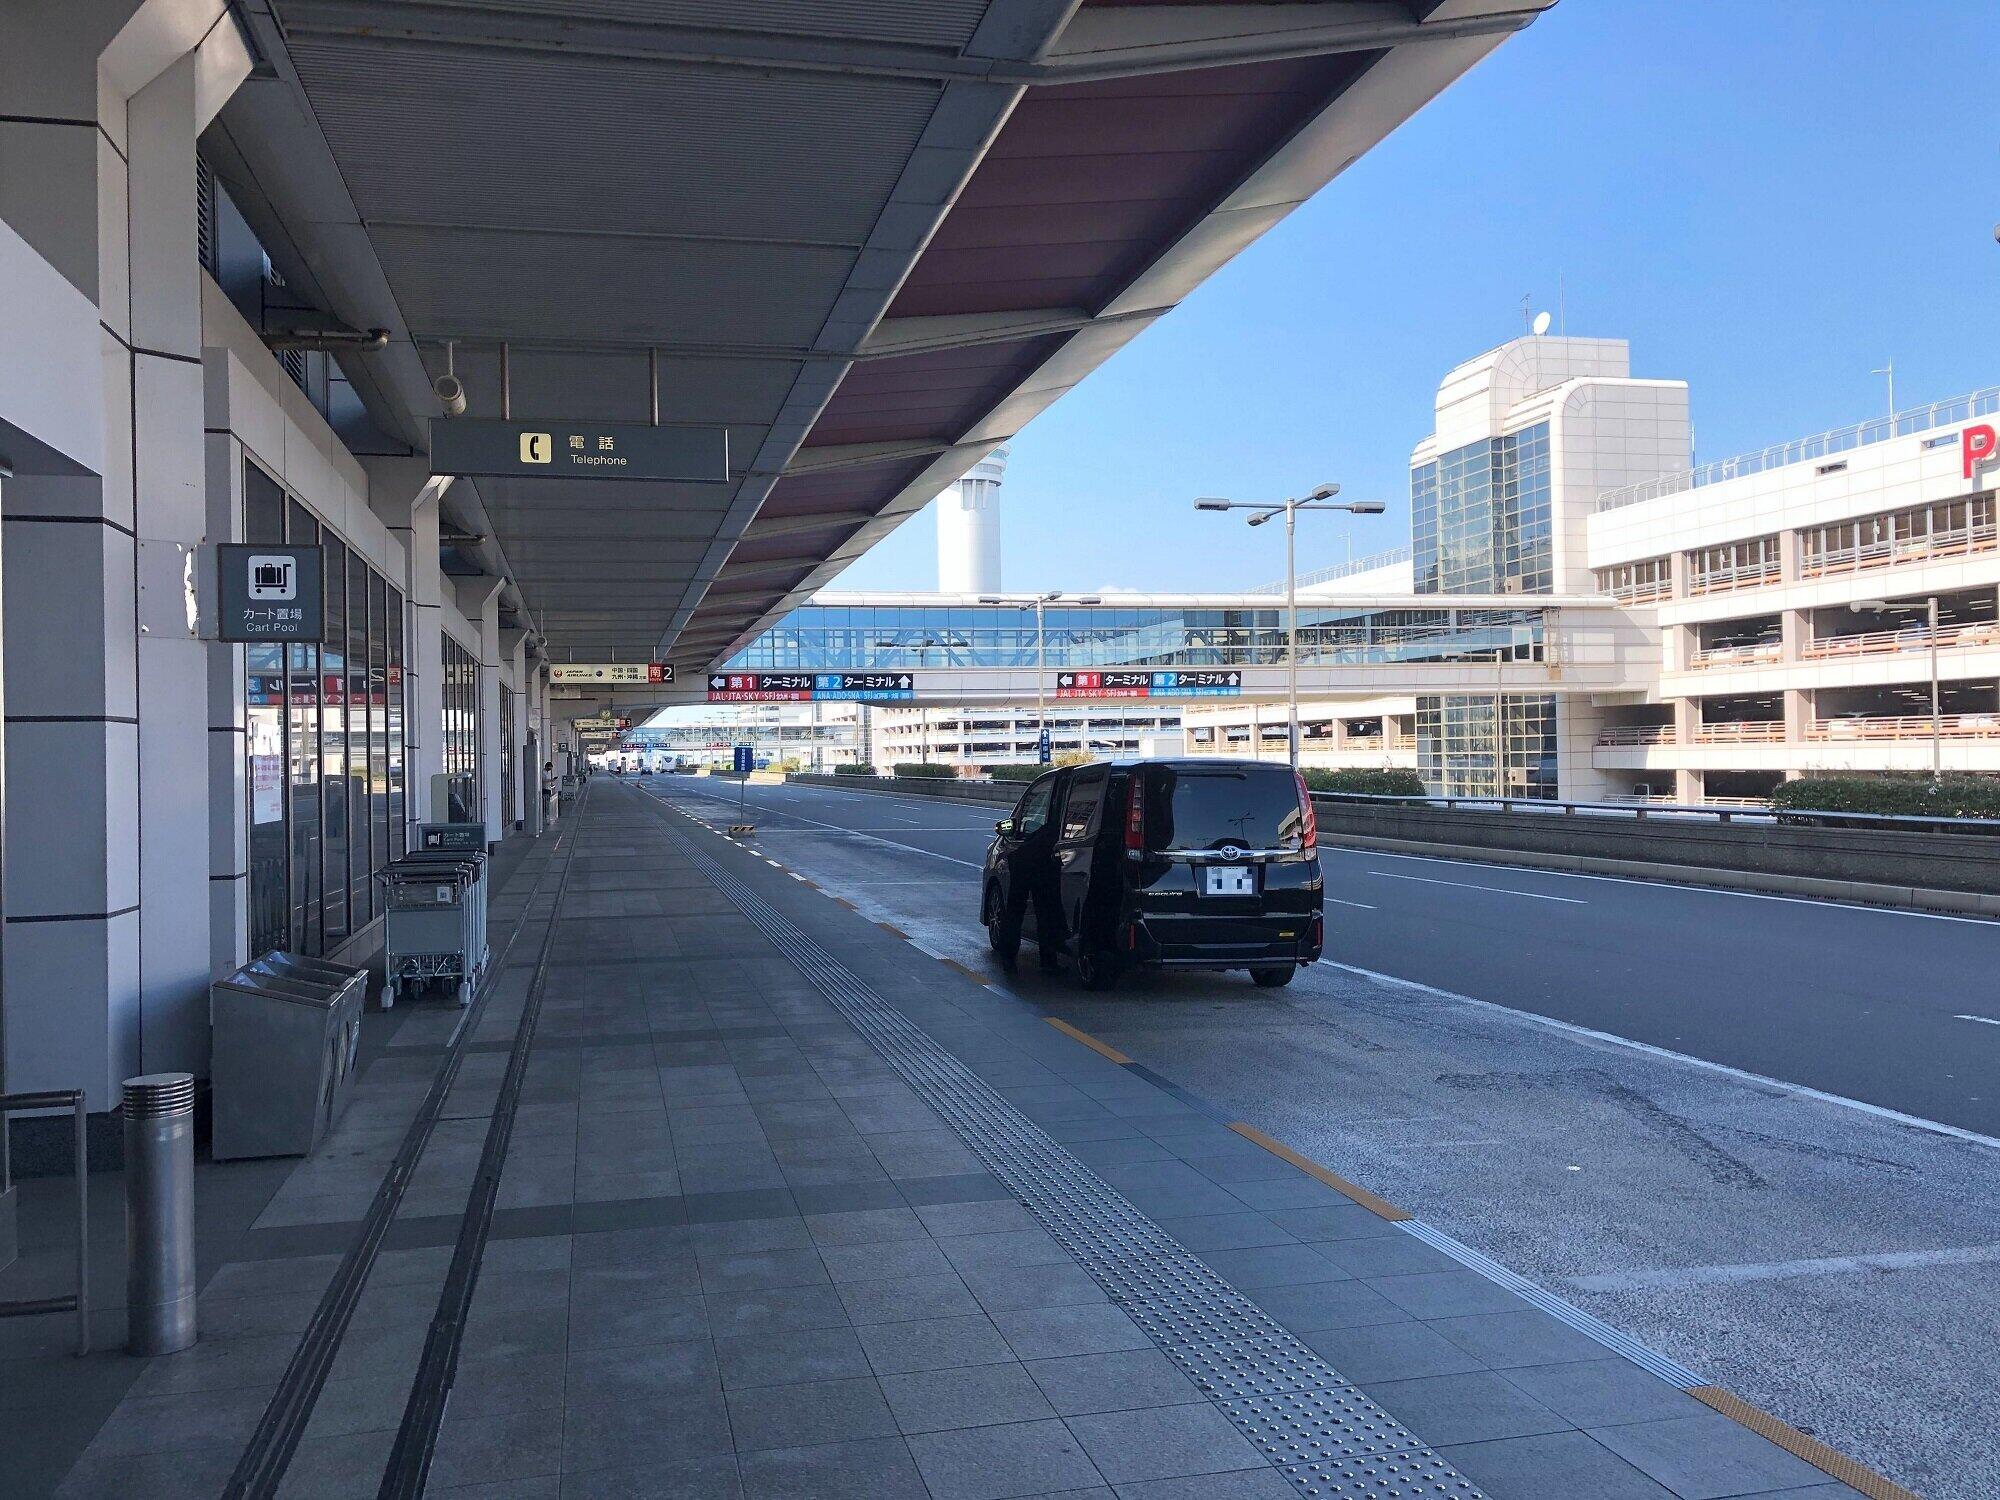 第1ターミナル出発ロビー外には、乗りつけるバスや車も少ない。